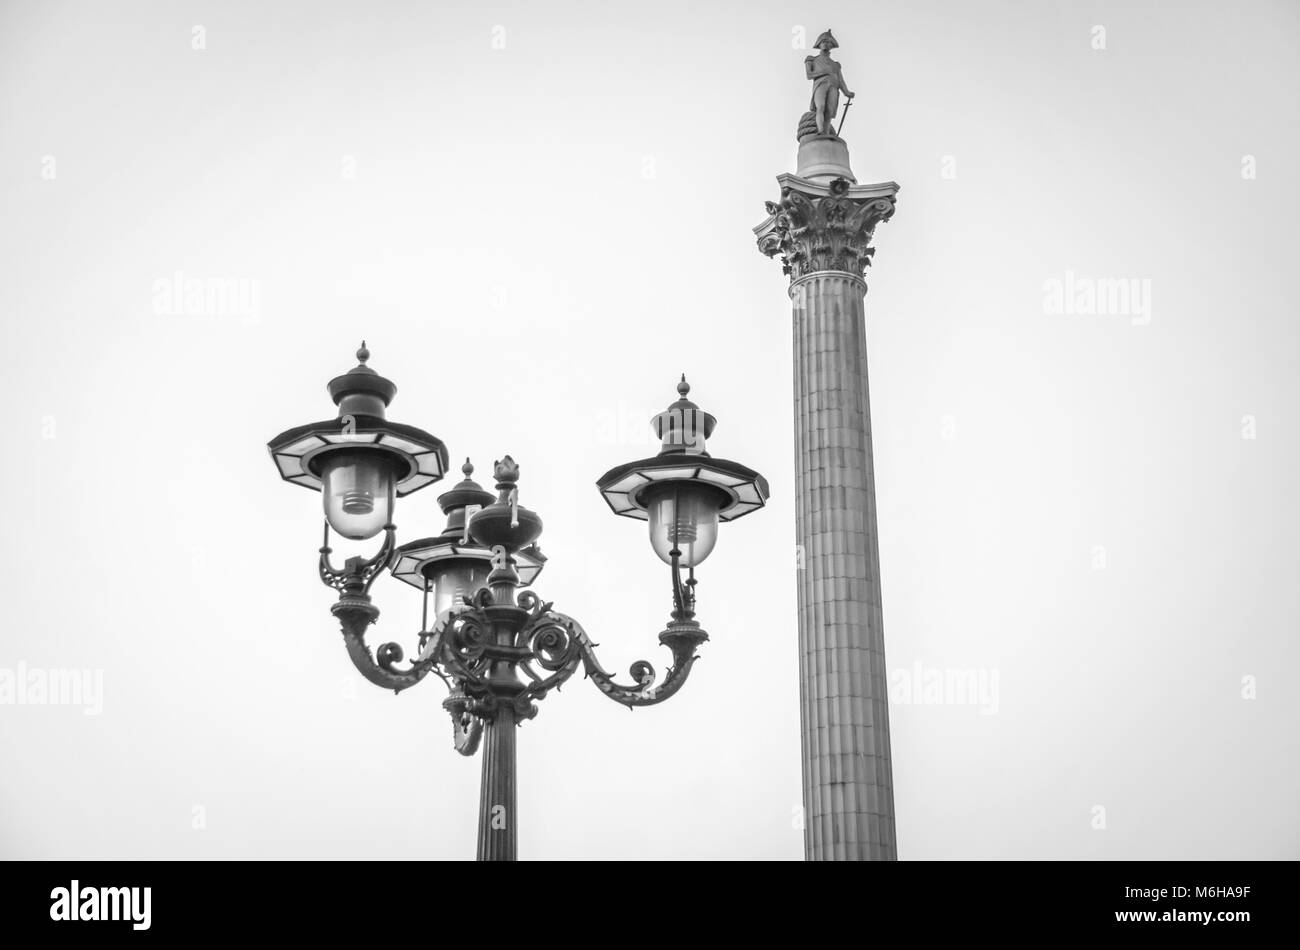 Londres, UK - OCT. 15, 2017 : la rue antique victorien lampadaire et la Colonne de Nelson, près de Trafalgar Square, Londres, Royaume-Uni. Banque D'Images